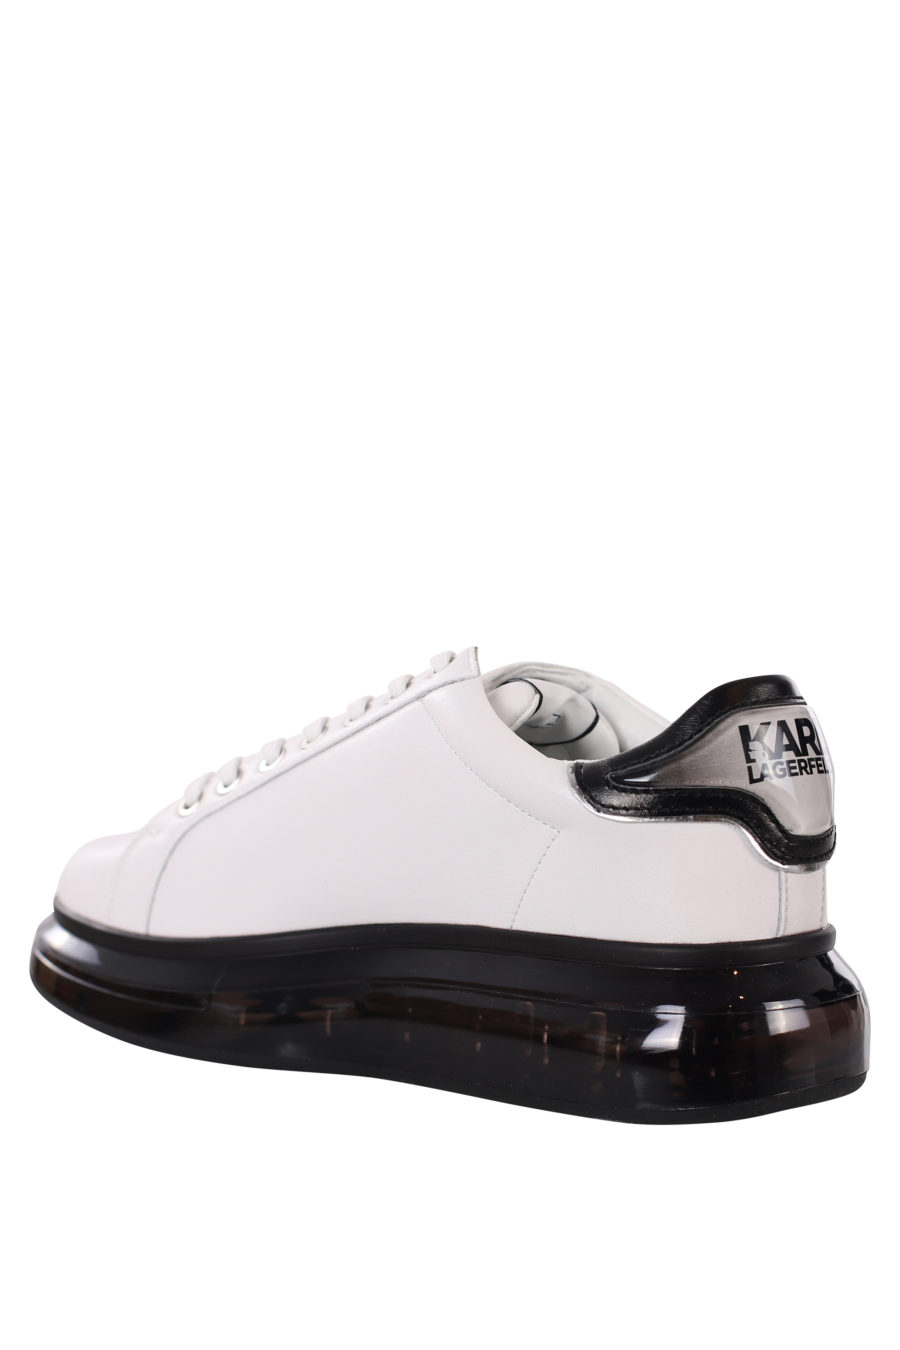 Zapatillas blancas con logo silueta negro y suela negra - IMG 0421